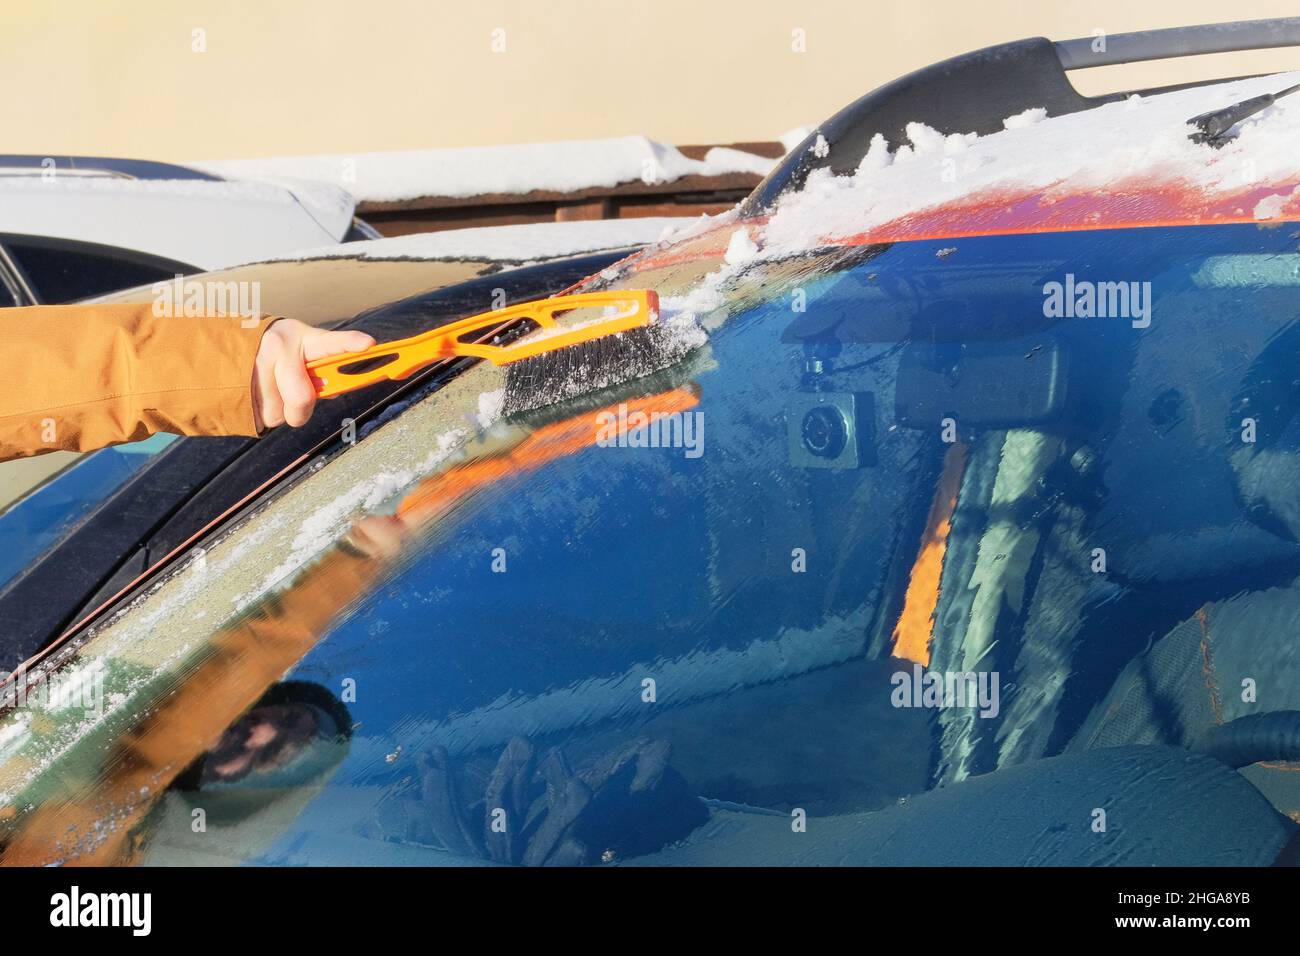 Auto Reinigung von Schnee mit Stroh Besen Stockfotografie - Alamy